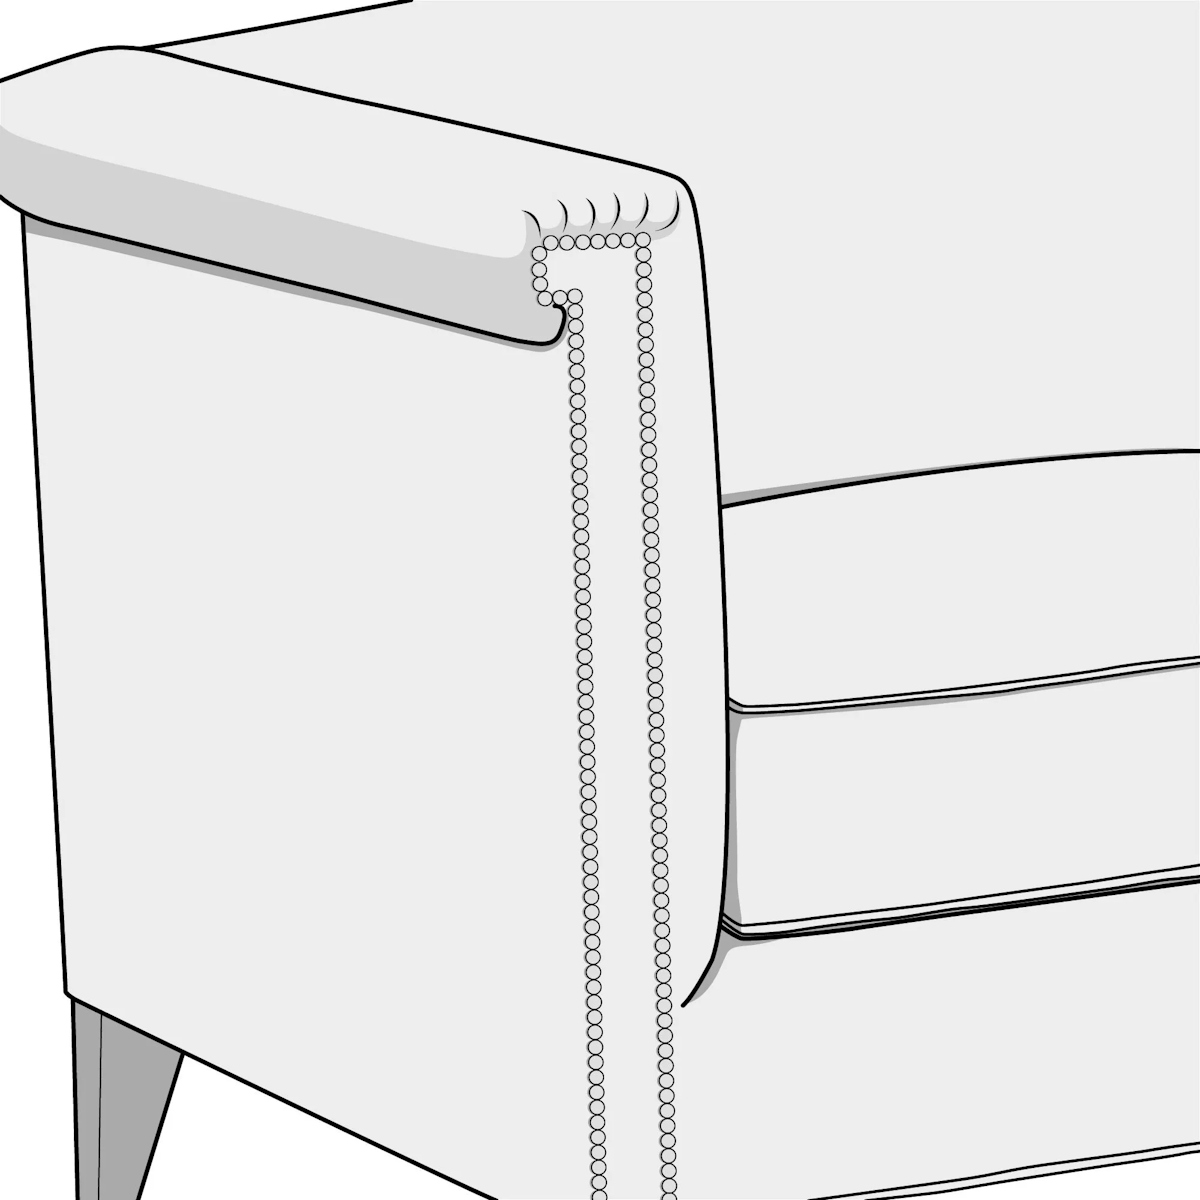 Illustration of key arm style sofa